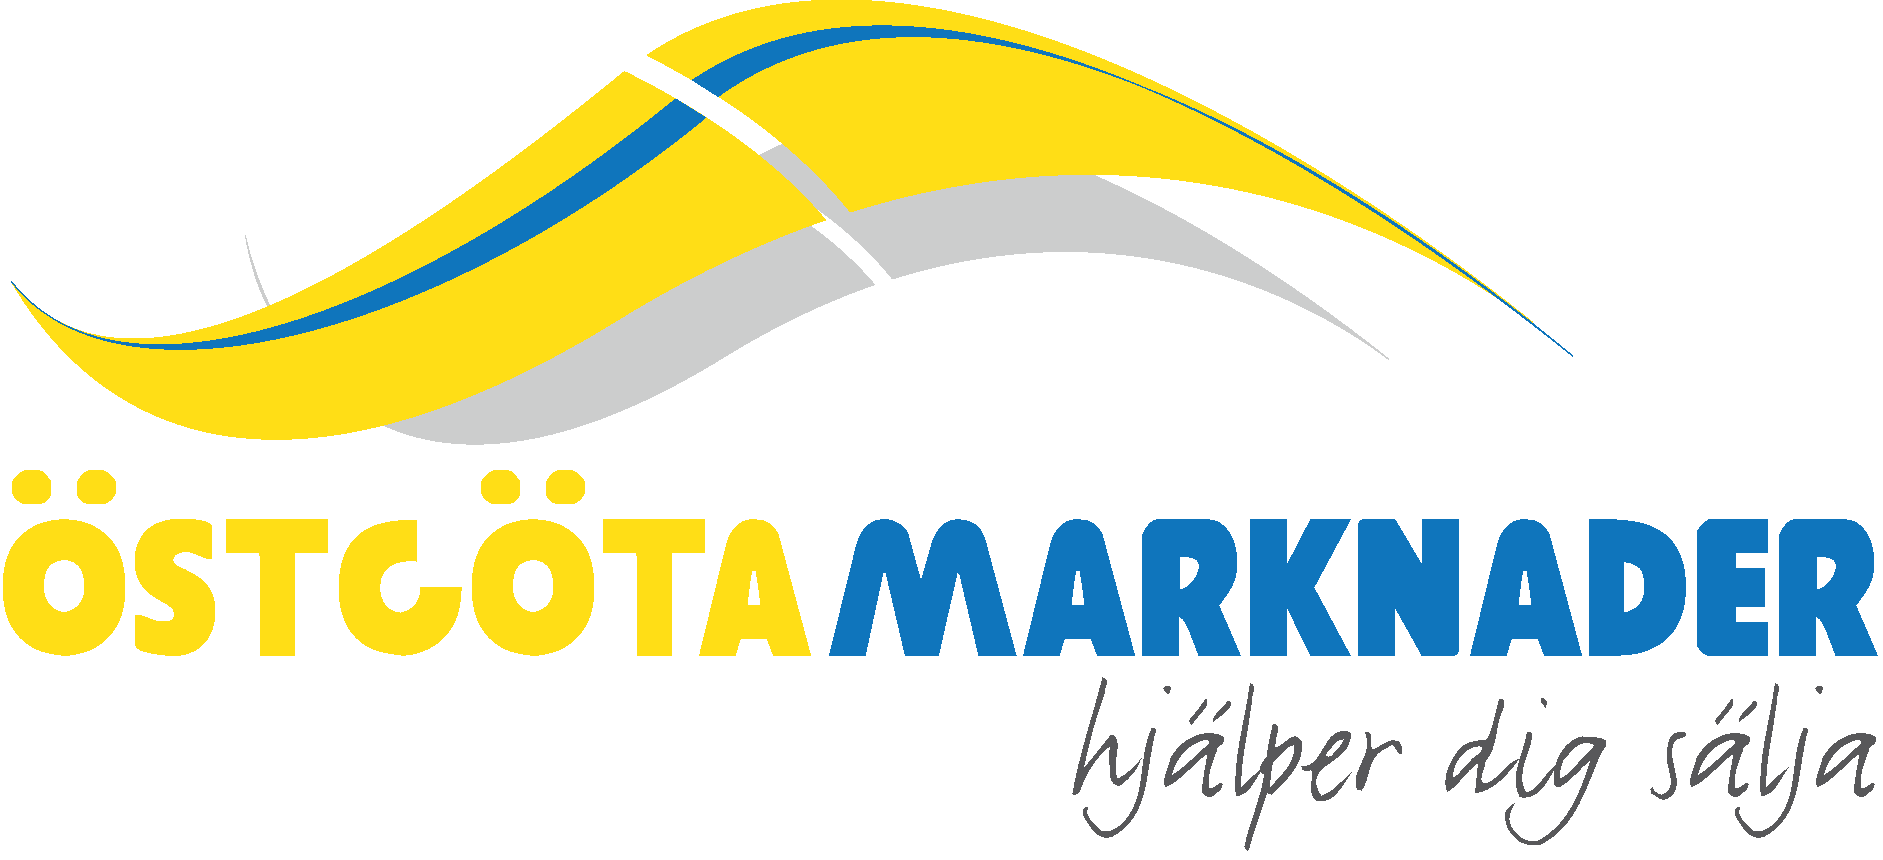 Östgöta marknader logotype